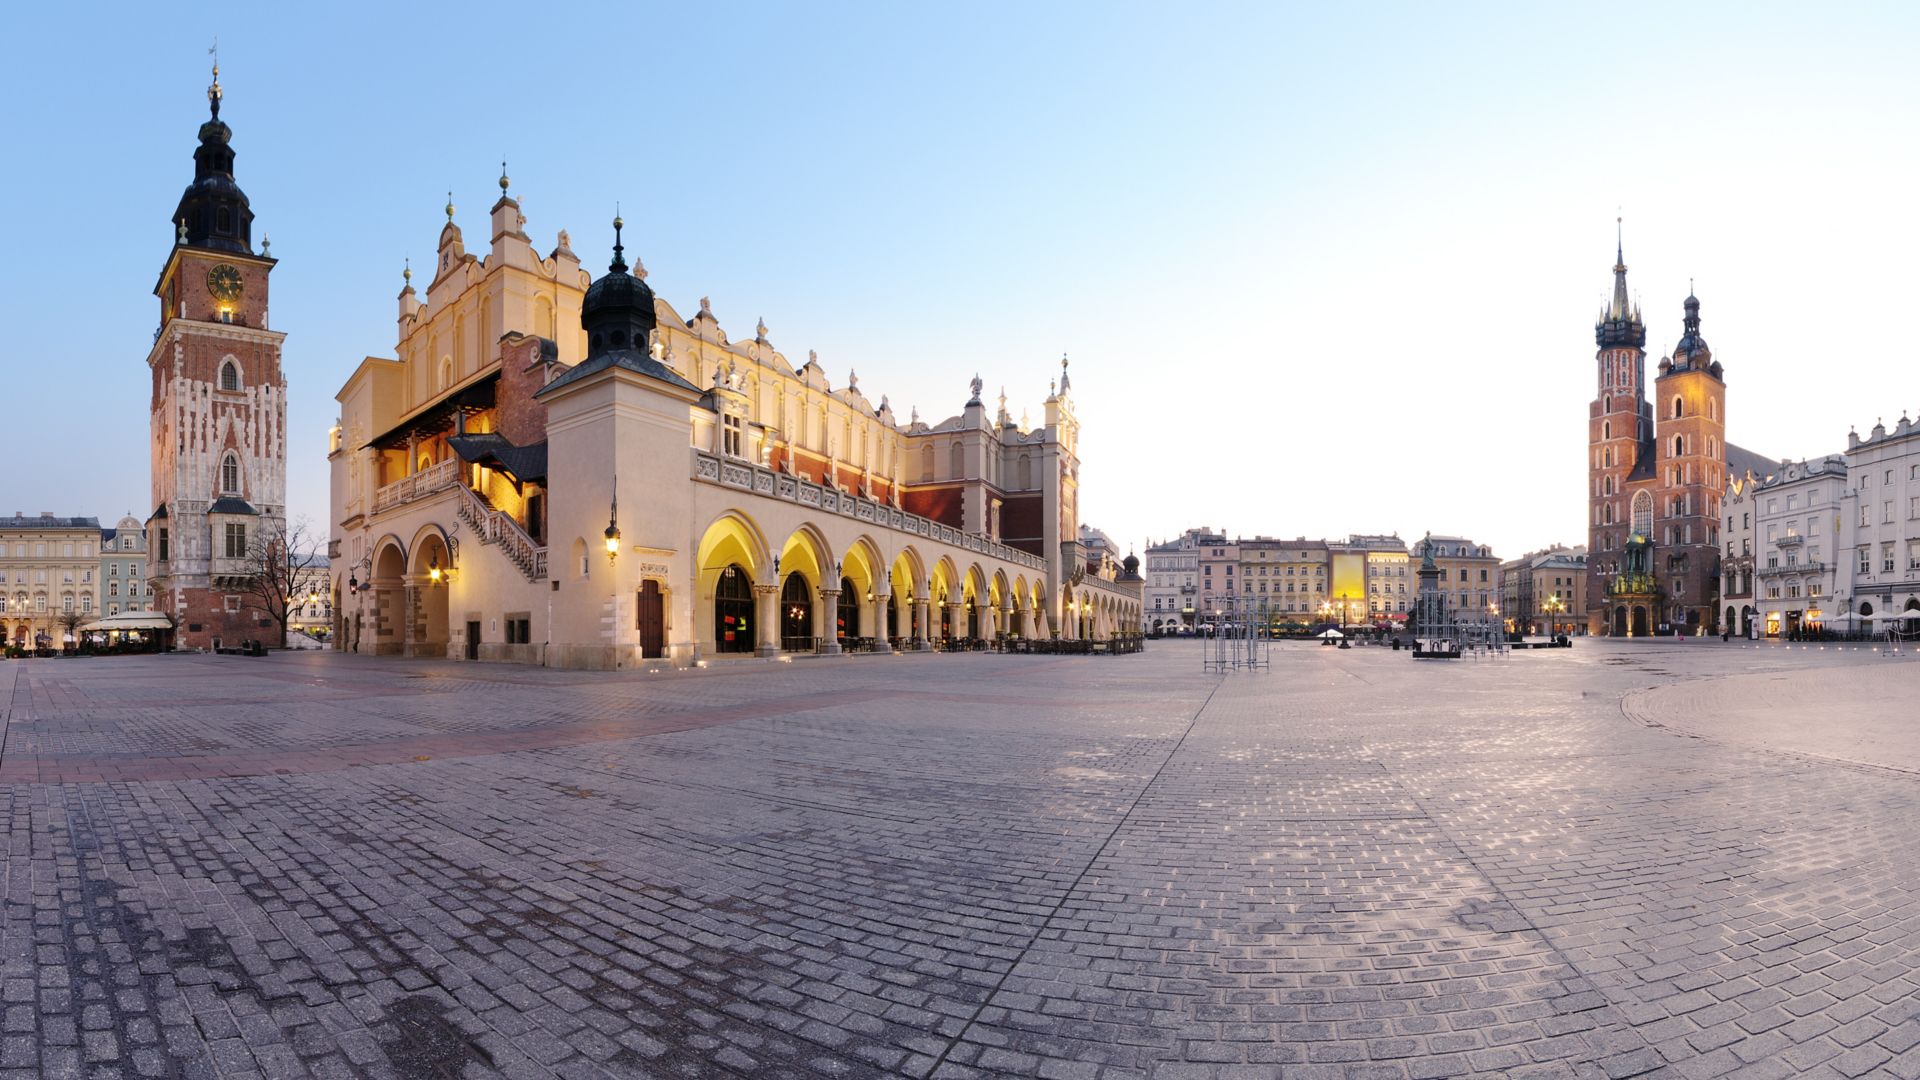 City square in KrakÃ³w, Poland